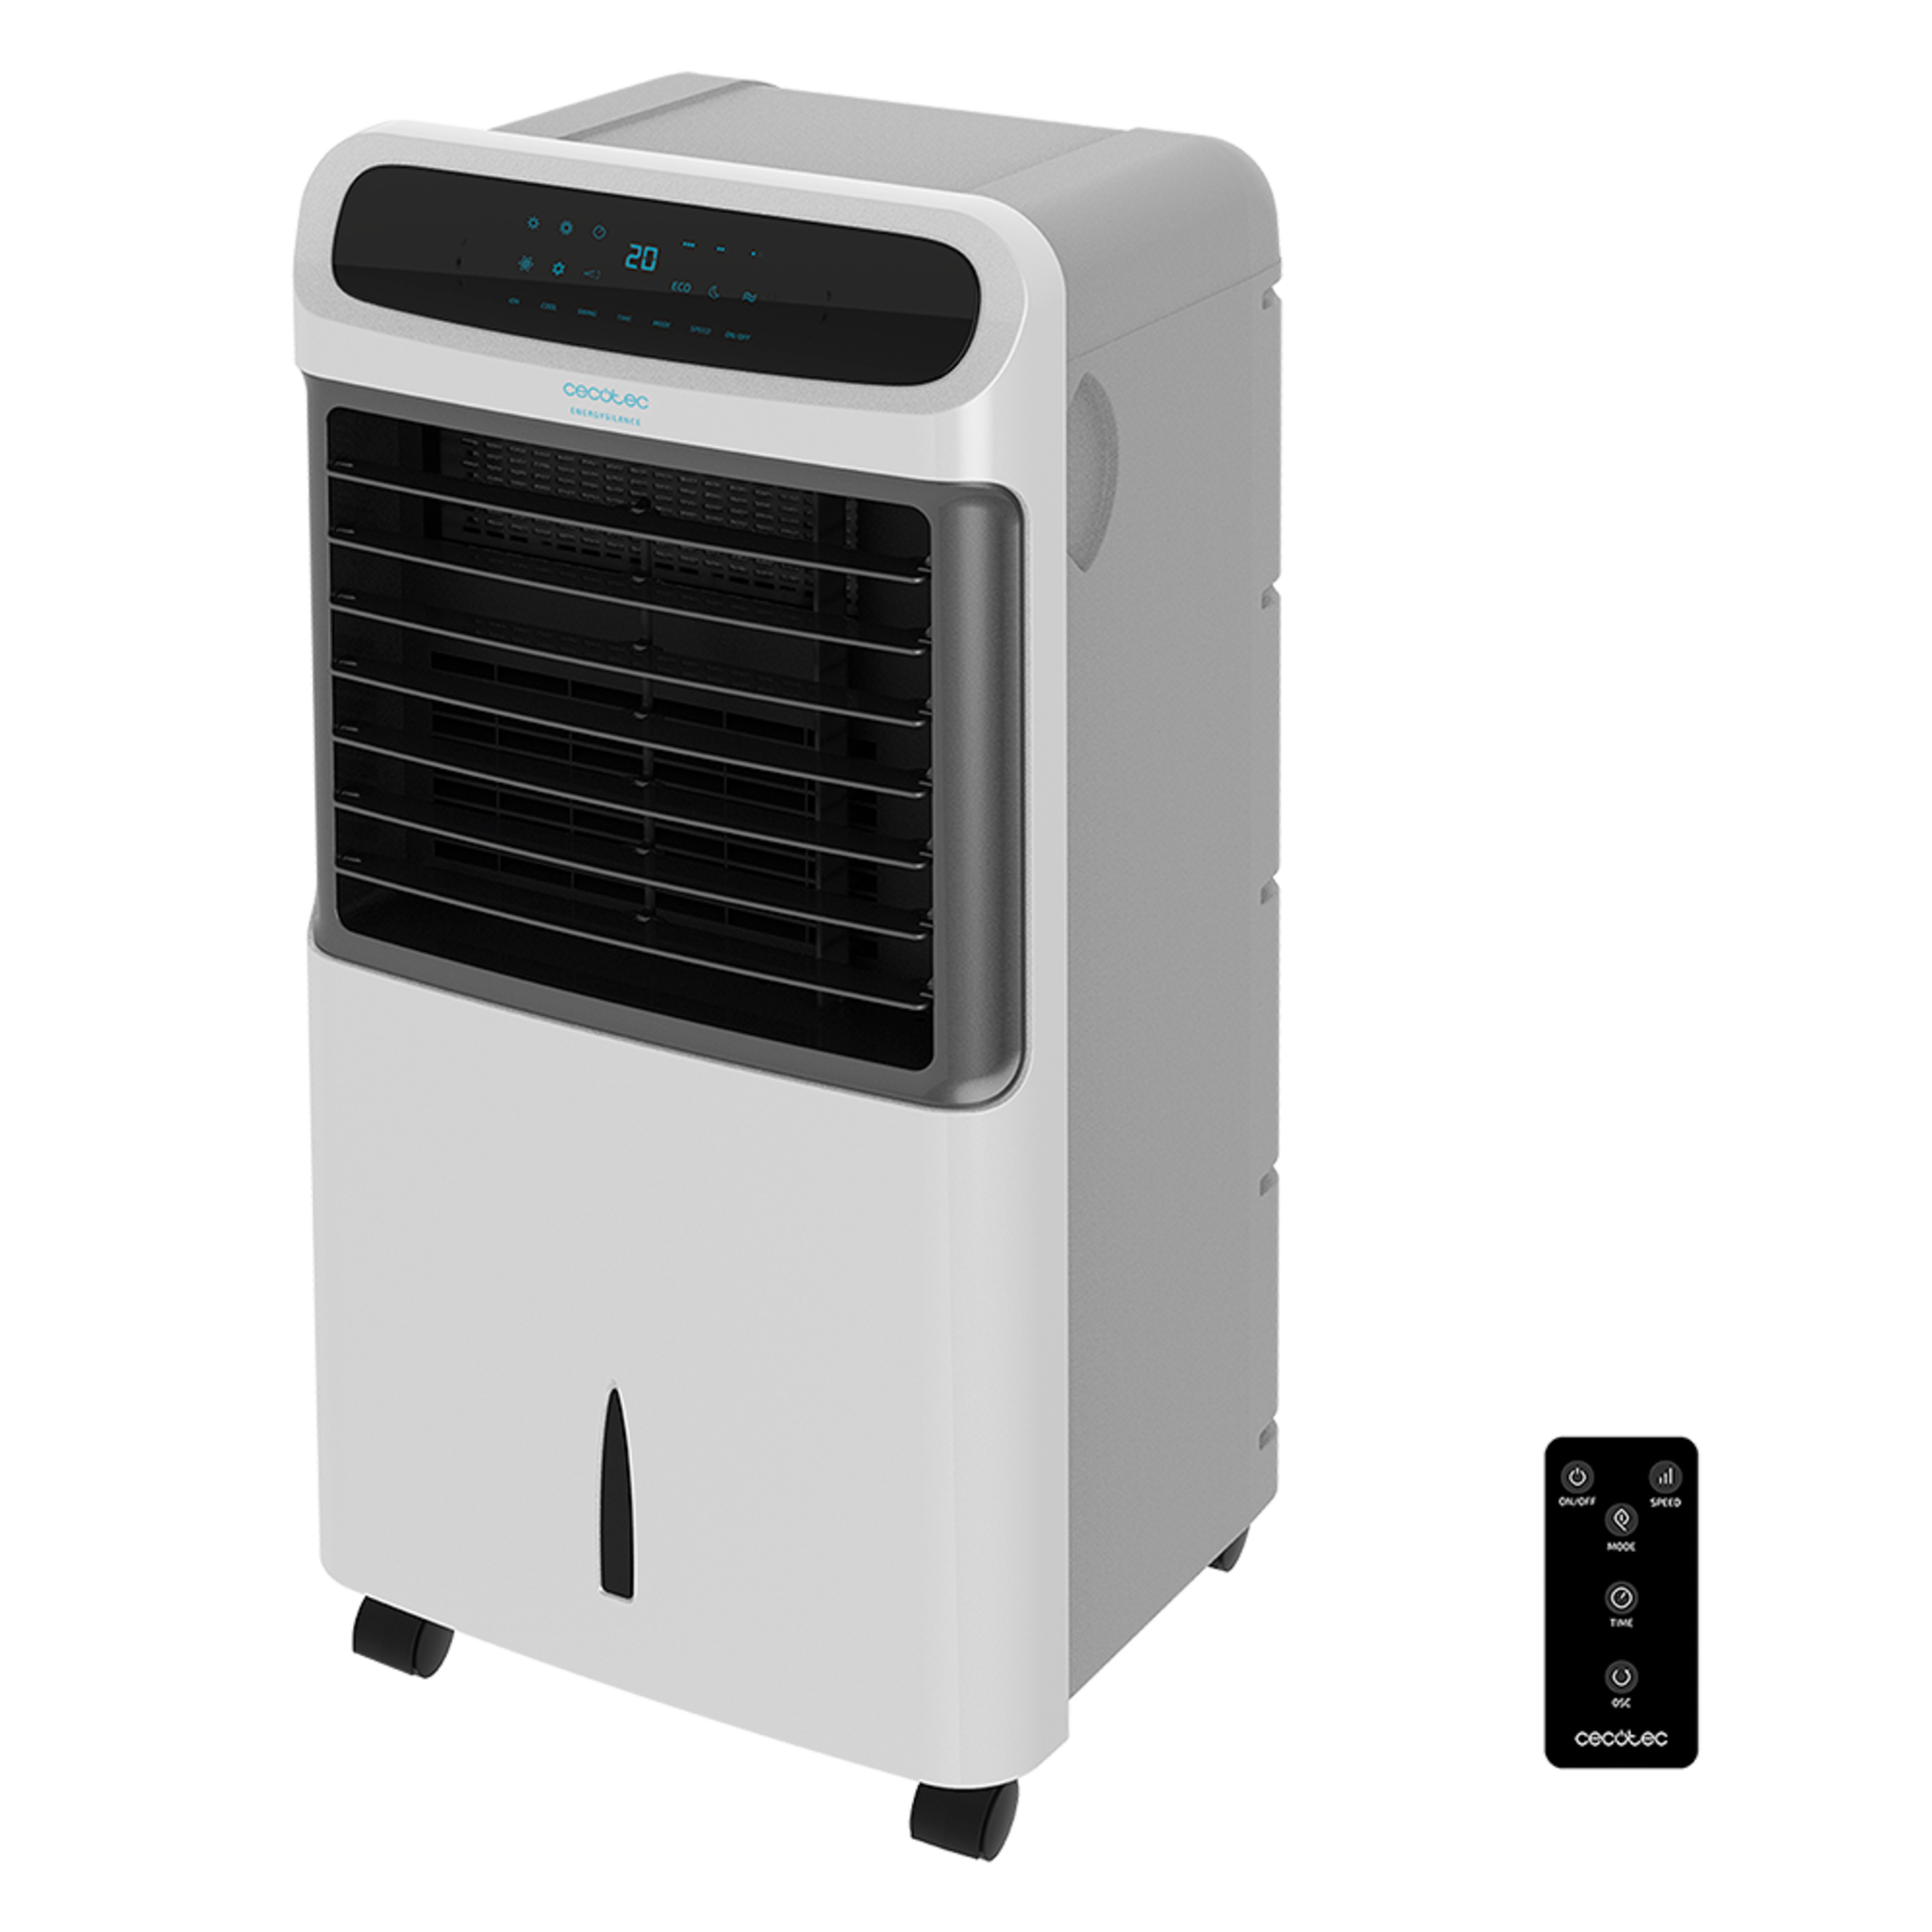 Climatizador Evaporativo EnergySilence PureTech 6500. 80 W, Doble Función Frio/Calor, Caudal 600 m2/h, 12l de Capacidad, Temporizador hasta 8h, Mando a Distancia, 3 Velocidades